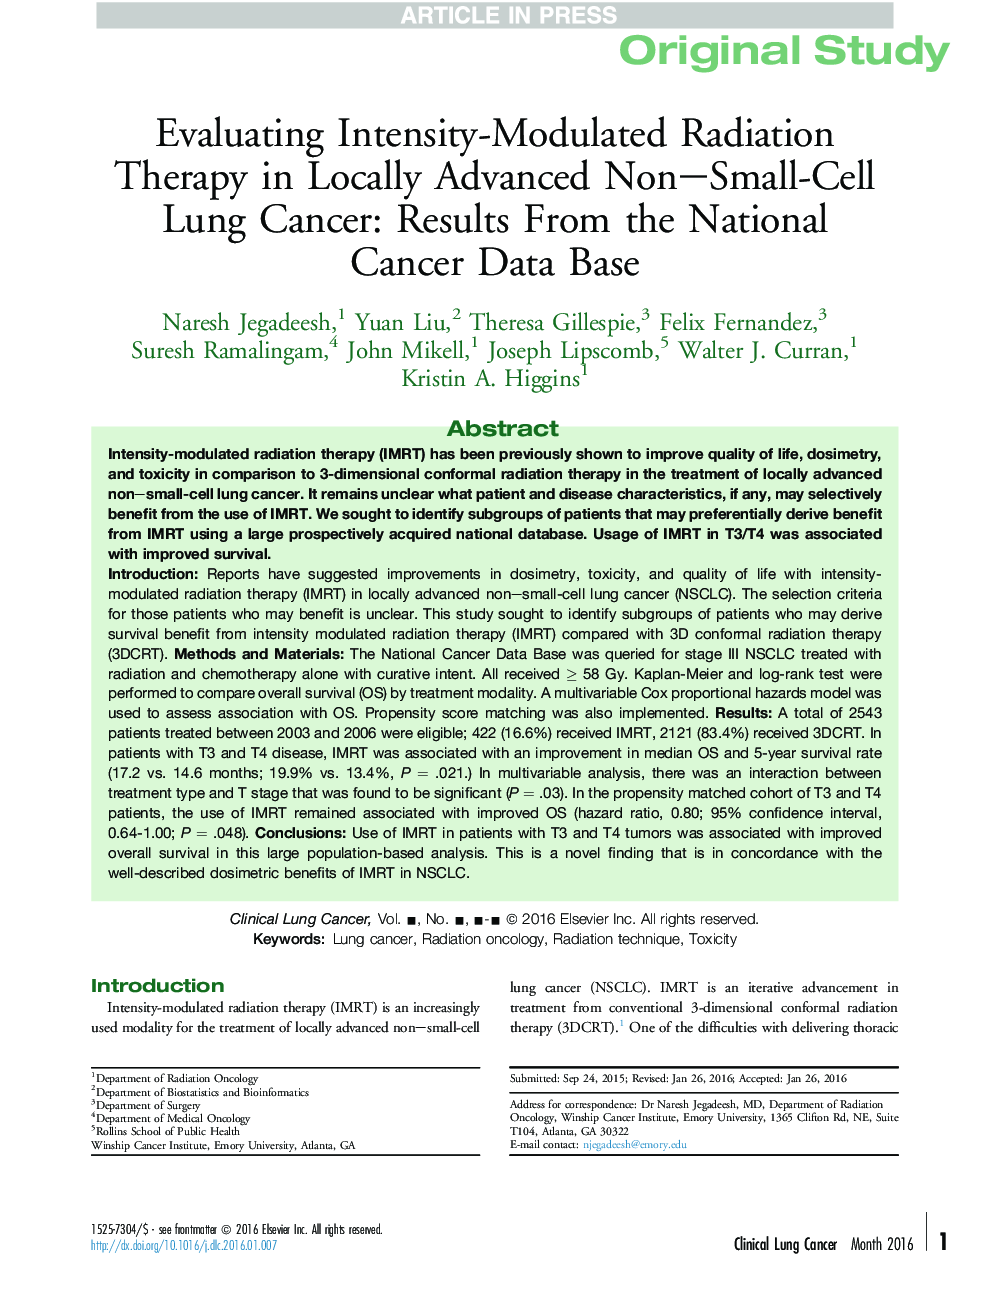 ارزیابی روش پرتوگیری مدولاسیون شدت در سرطان ریه های غیر سلولی پیشرفته محلی: نتایج حاصل از پایگاه داده های سرطان ملی 